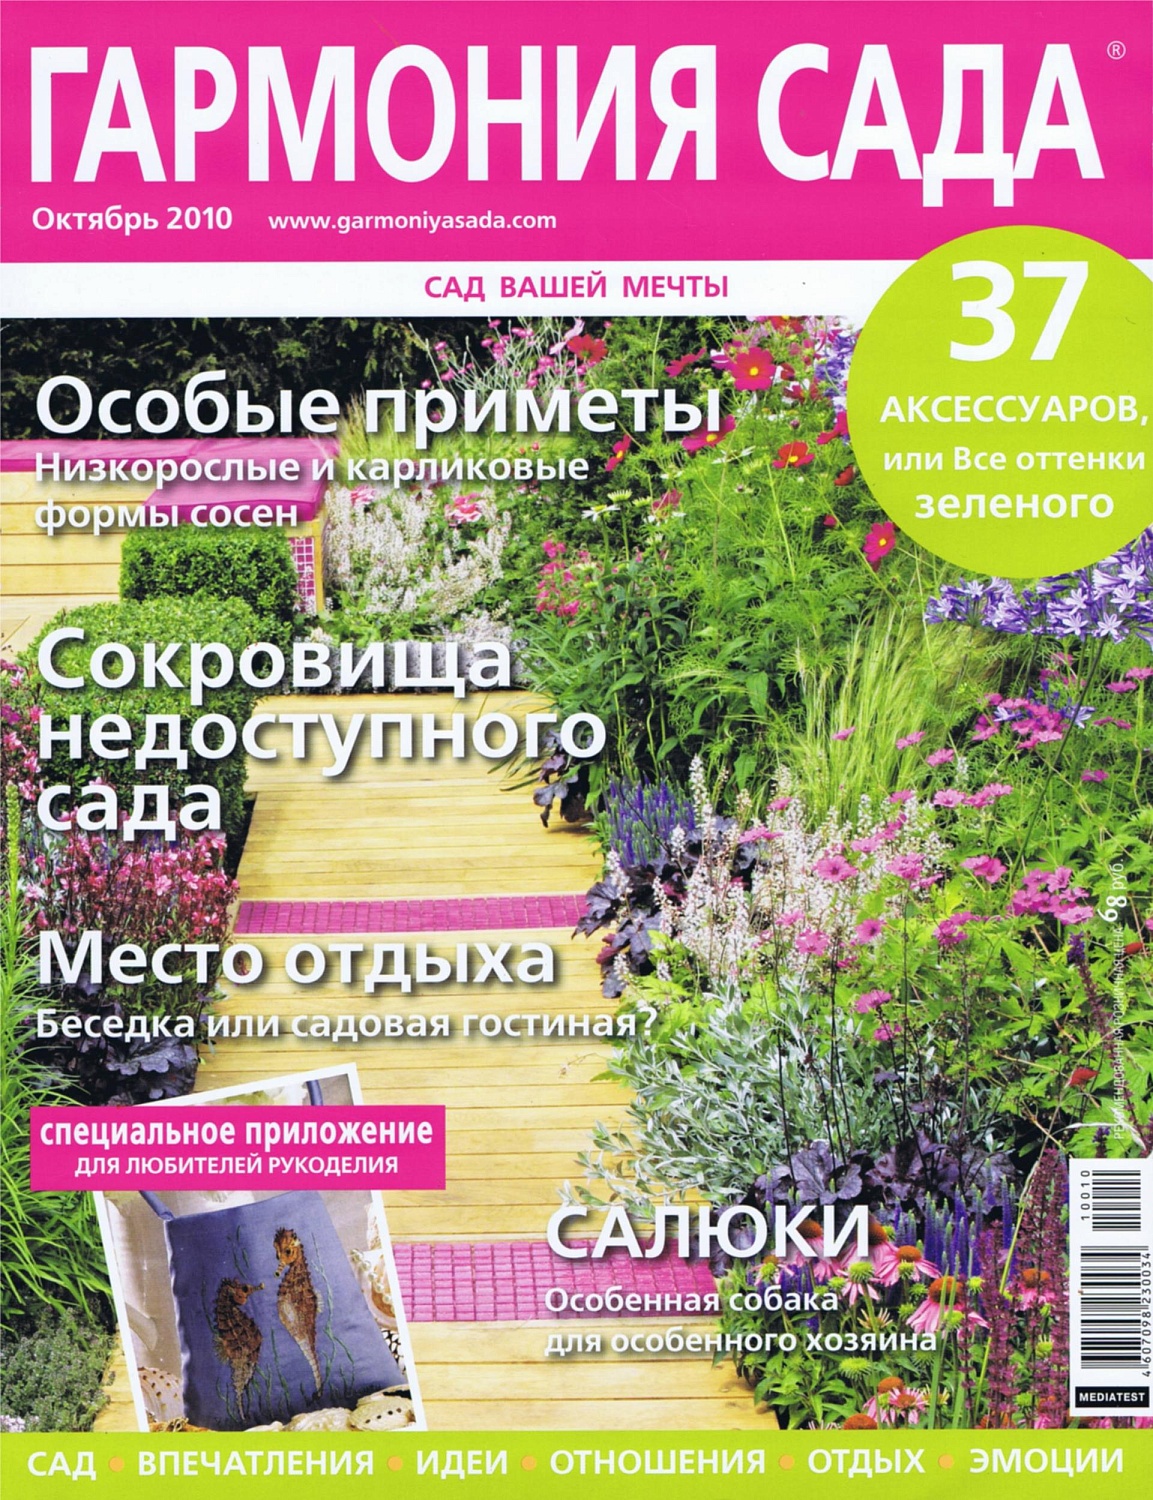 Журнал "ГАРМОНИЯ САДА" - "Личная территория" 2010